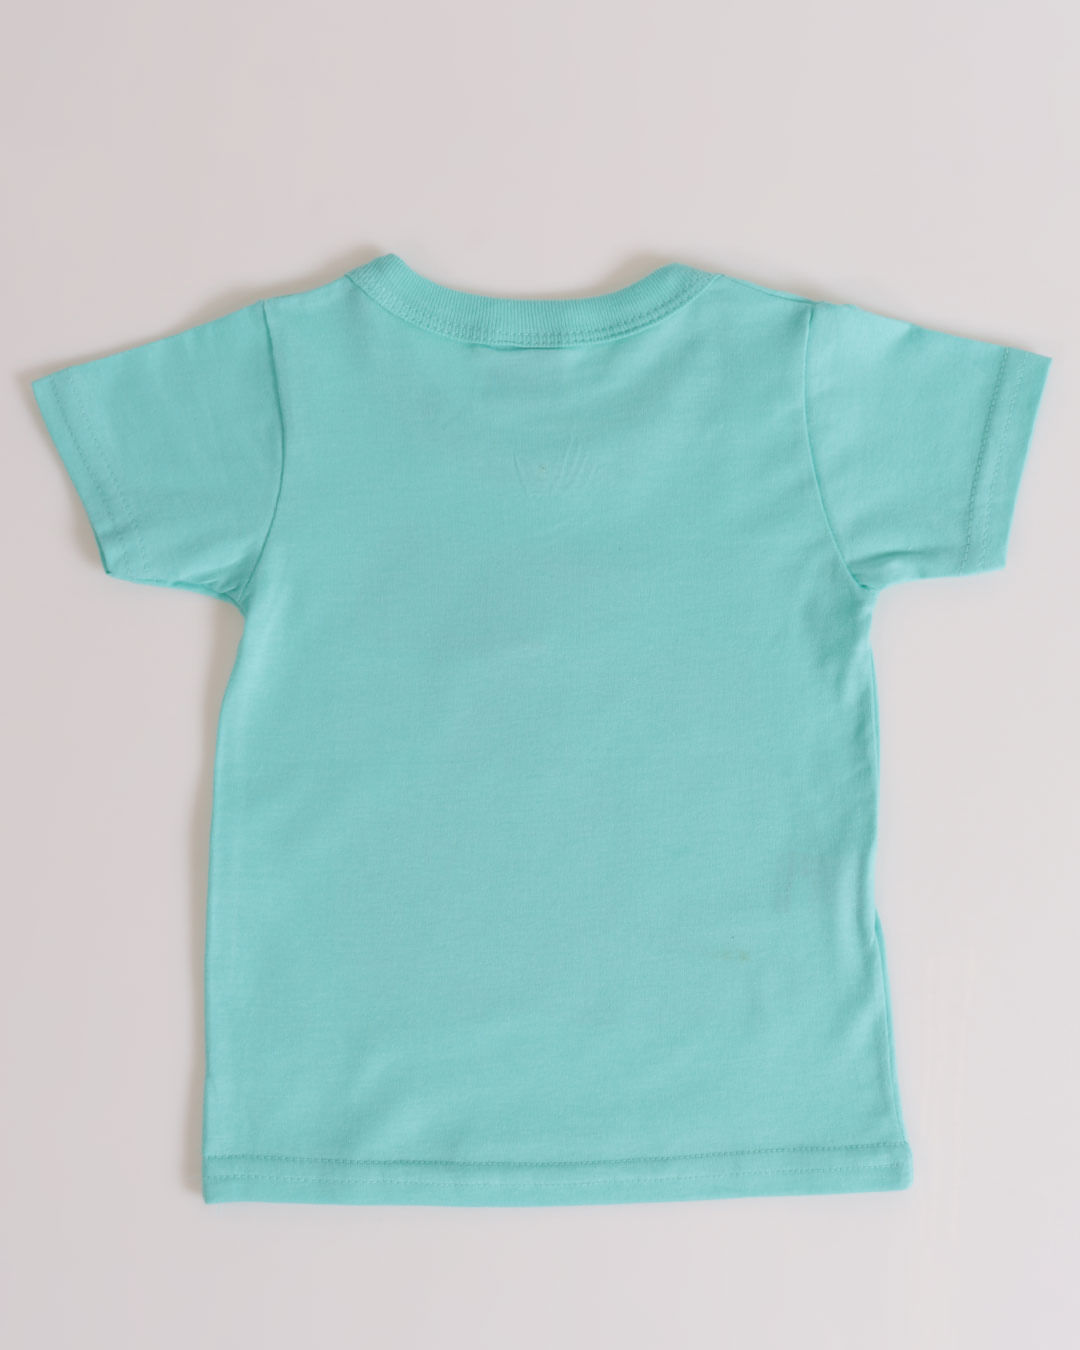 Camiseta-13804-Mpg---Azul-Claro